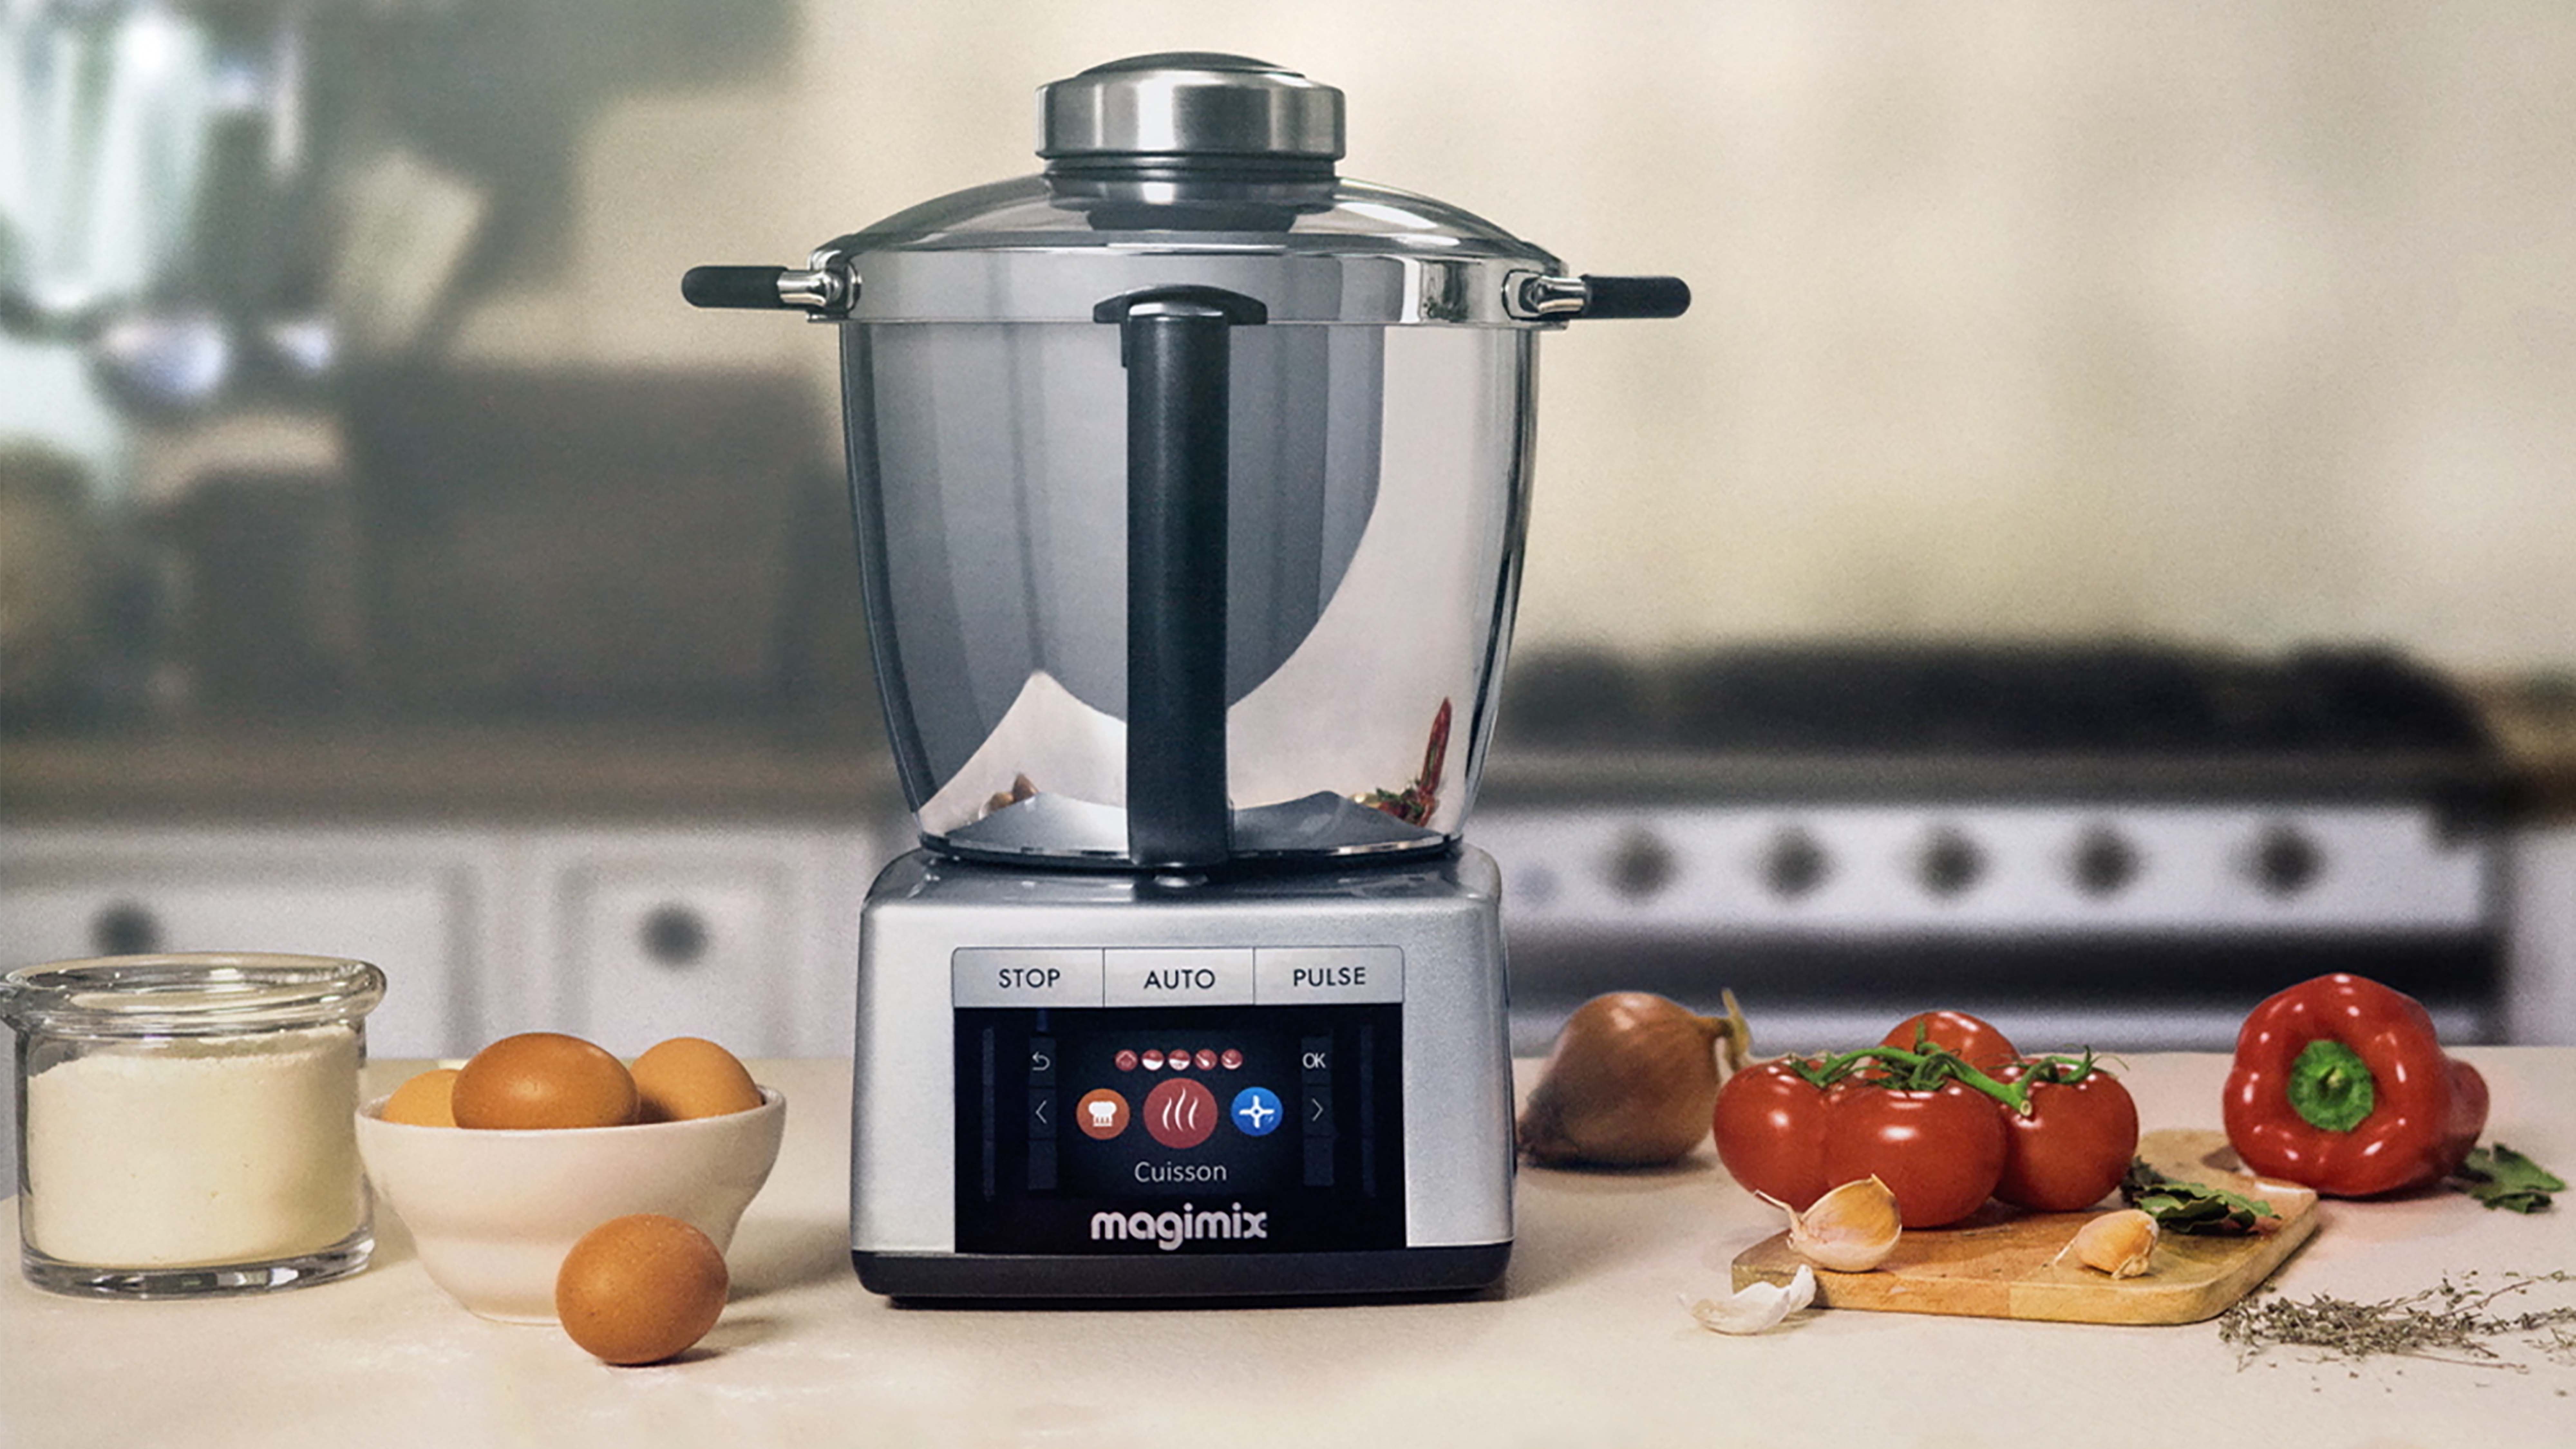 Le robot cuiseur Magimix Expert Connect en promo pour Noël